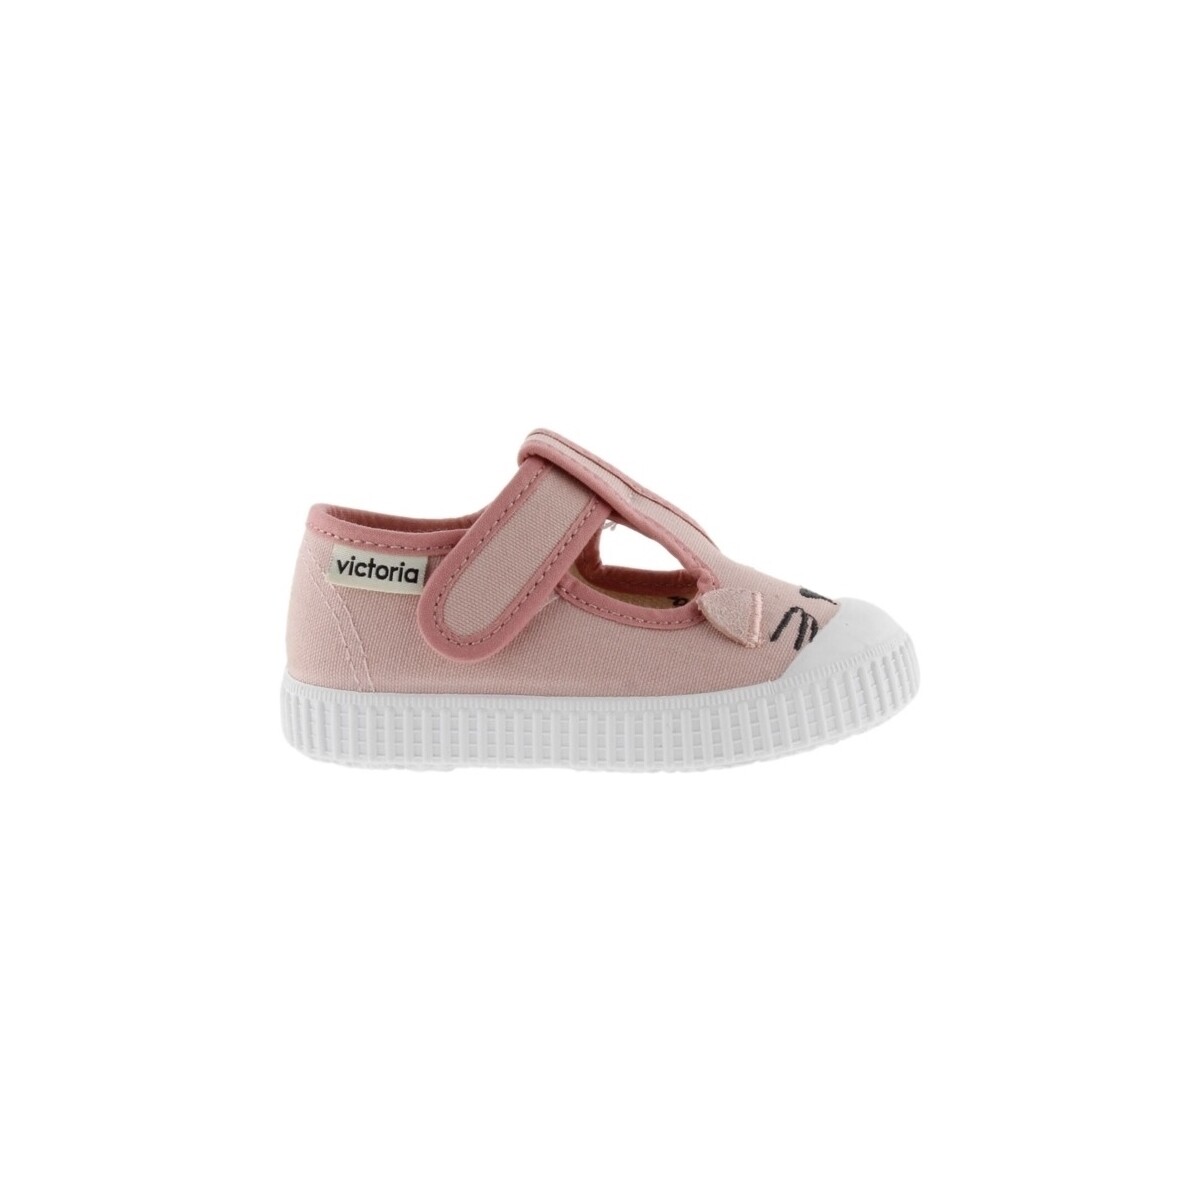 Victoria Rose Baby Sandals 366158 - Skin Gd2vsH3K